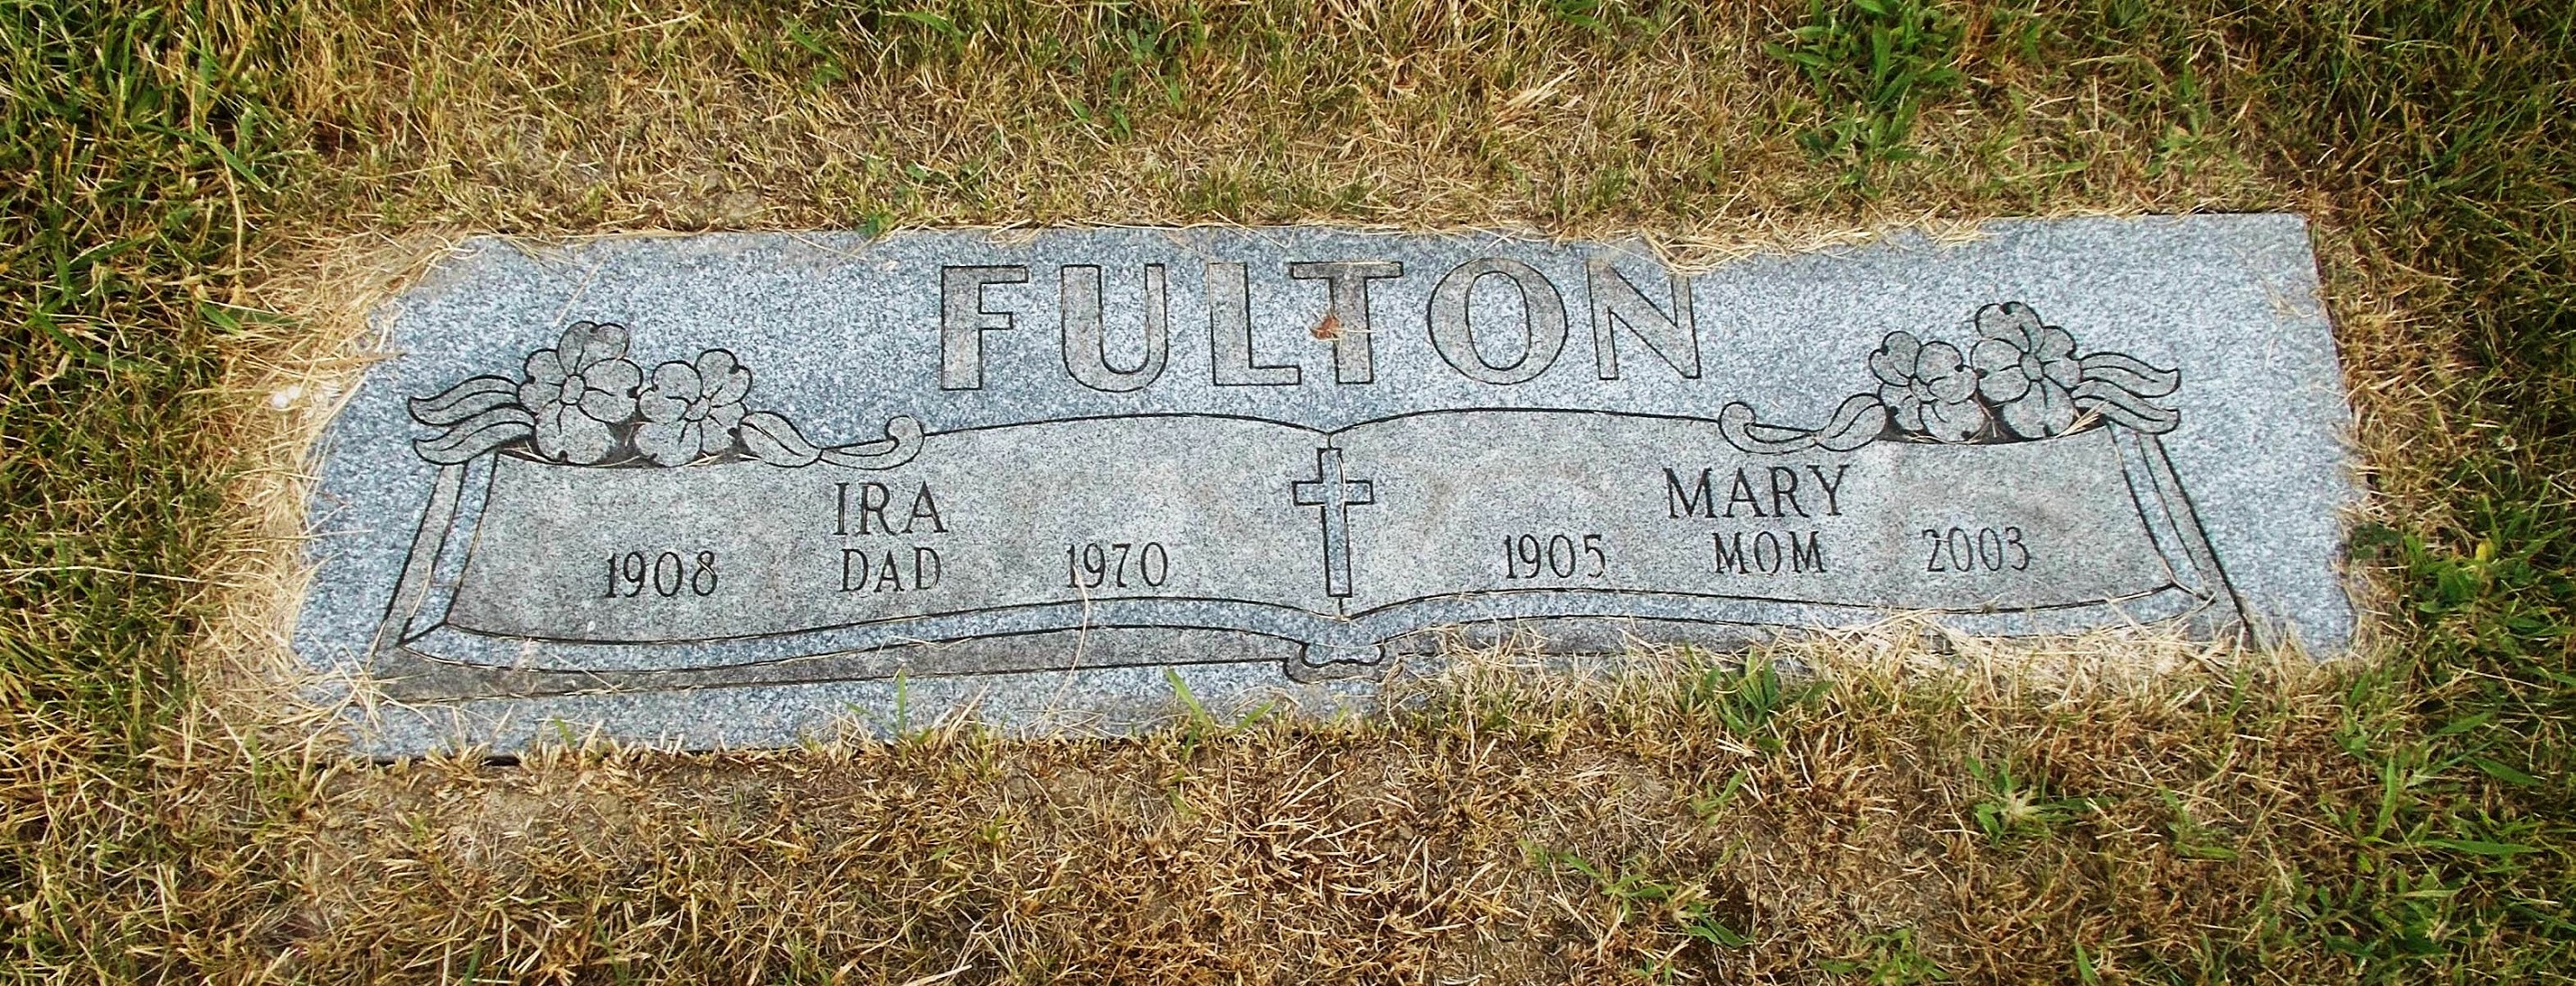 Ira Fulton